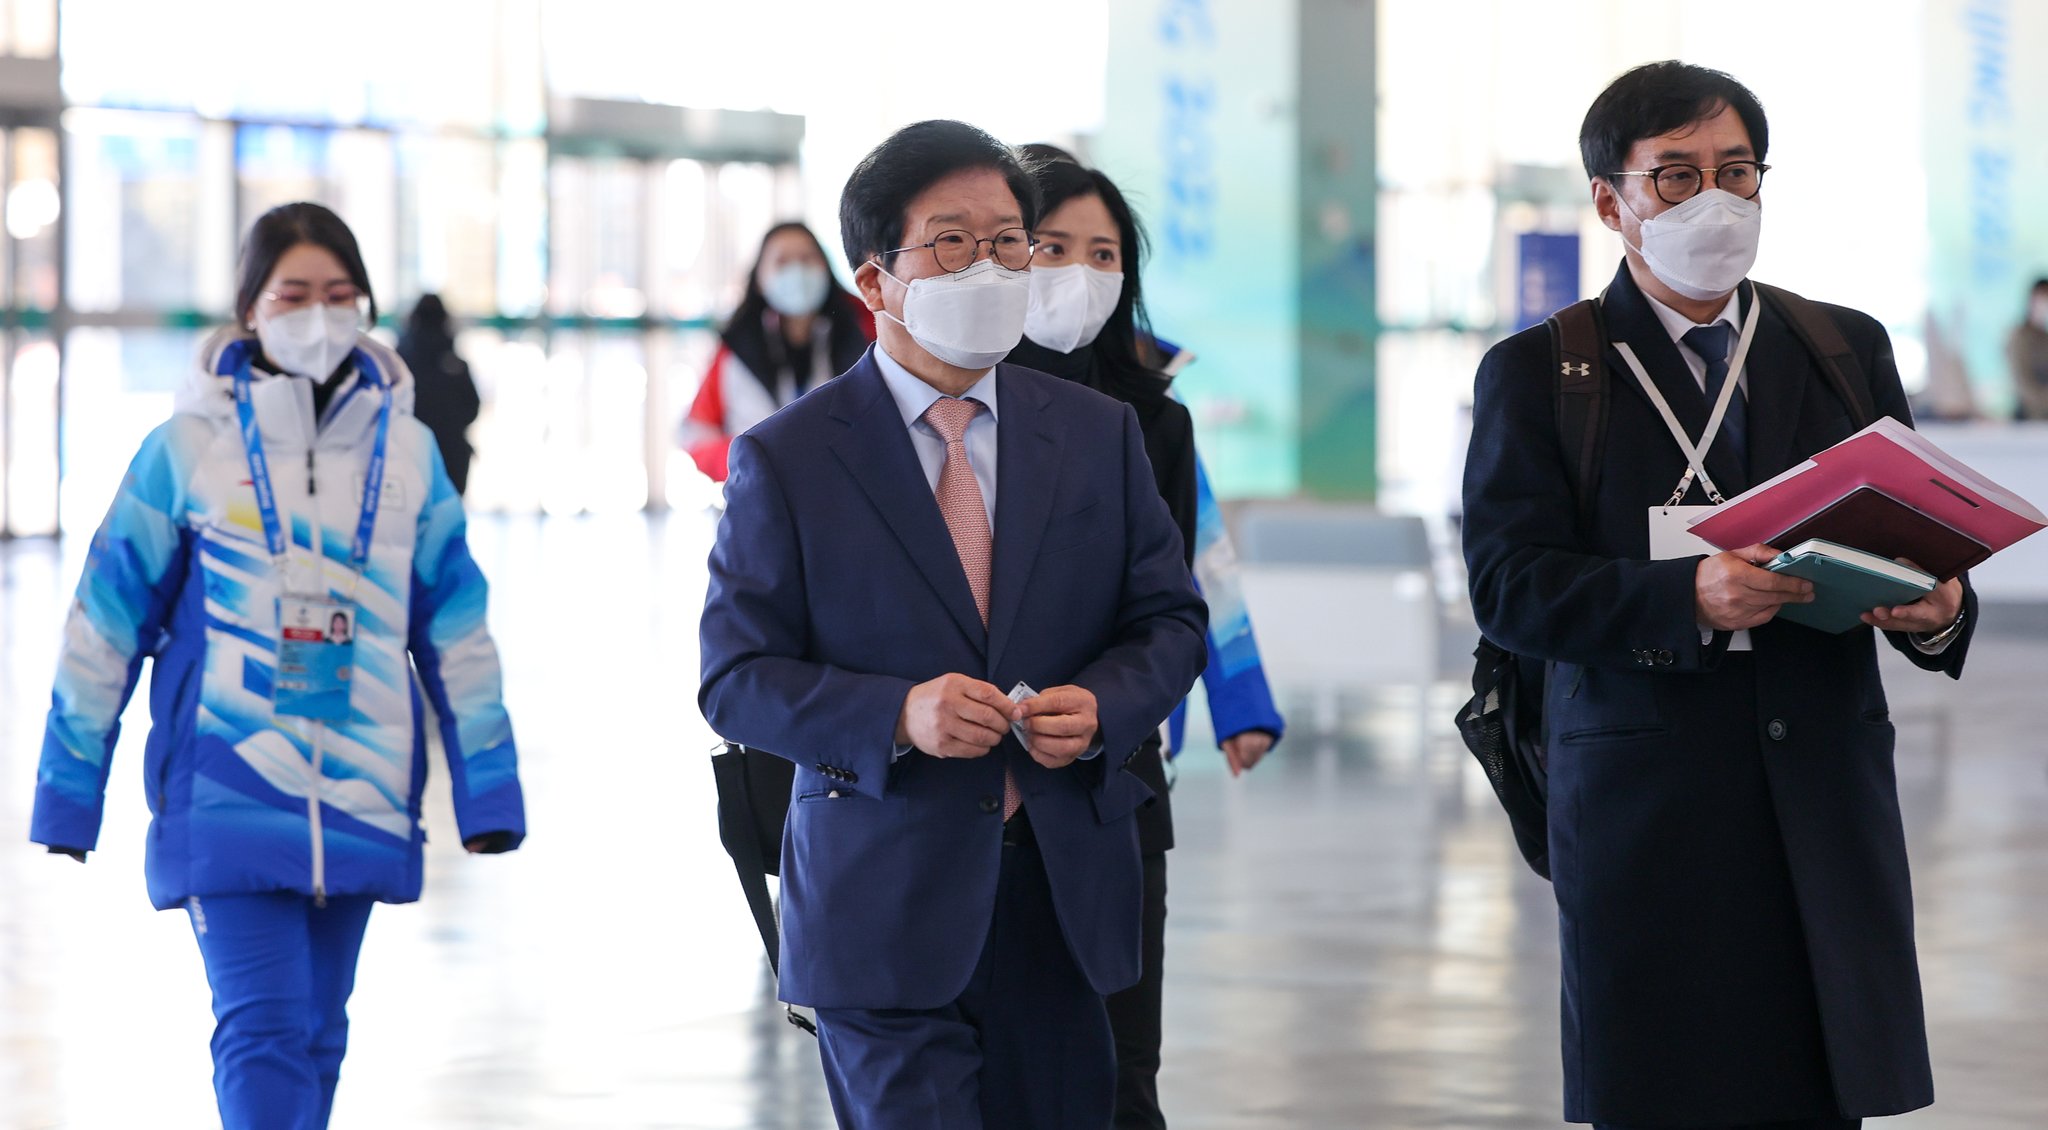 4일 베이징 겨울올림픽 메인미디어센터를 방문한 박병석 국회의장(가운데). [뉴스1]